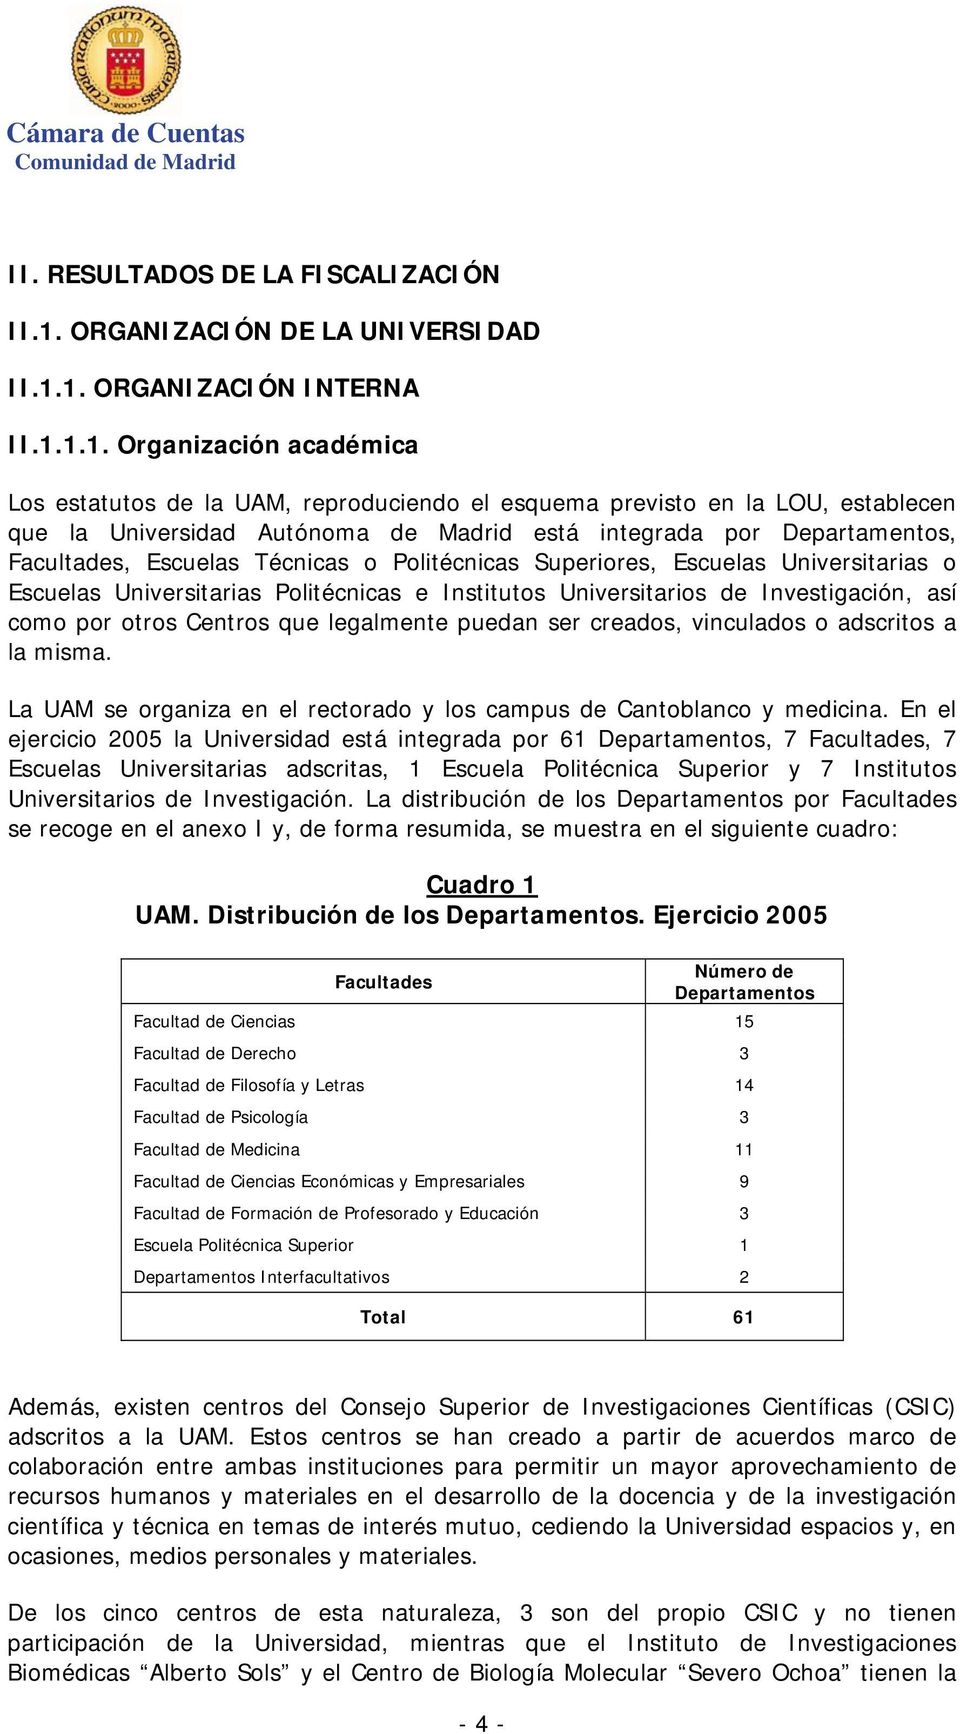 1. ORGANIZACIÓN INTERNA II.1.1.1. Organización académica Los estatutos de la UAM, reproduciendo el esquema previsto en la LOU, establecen que la Universidad Autónoma de Madrid está integrada por